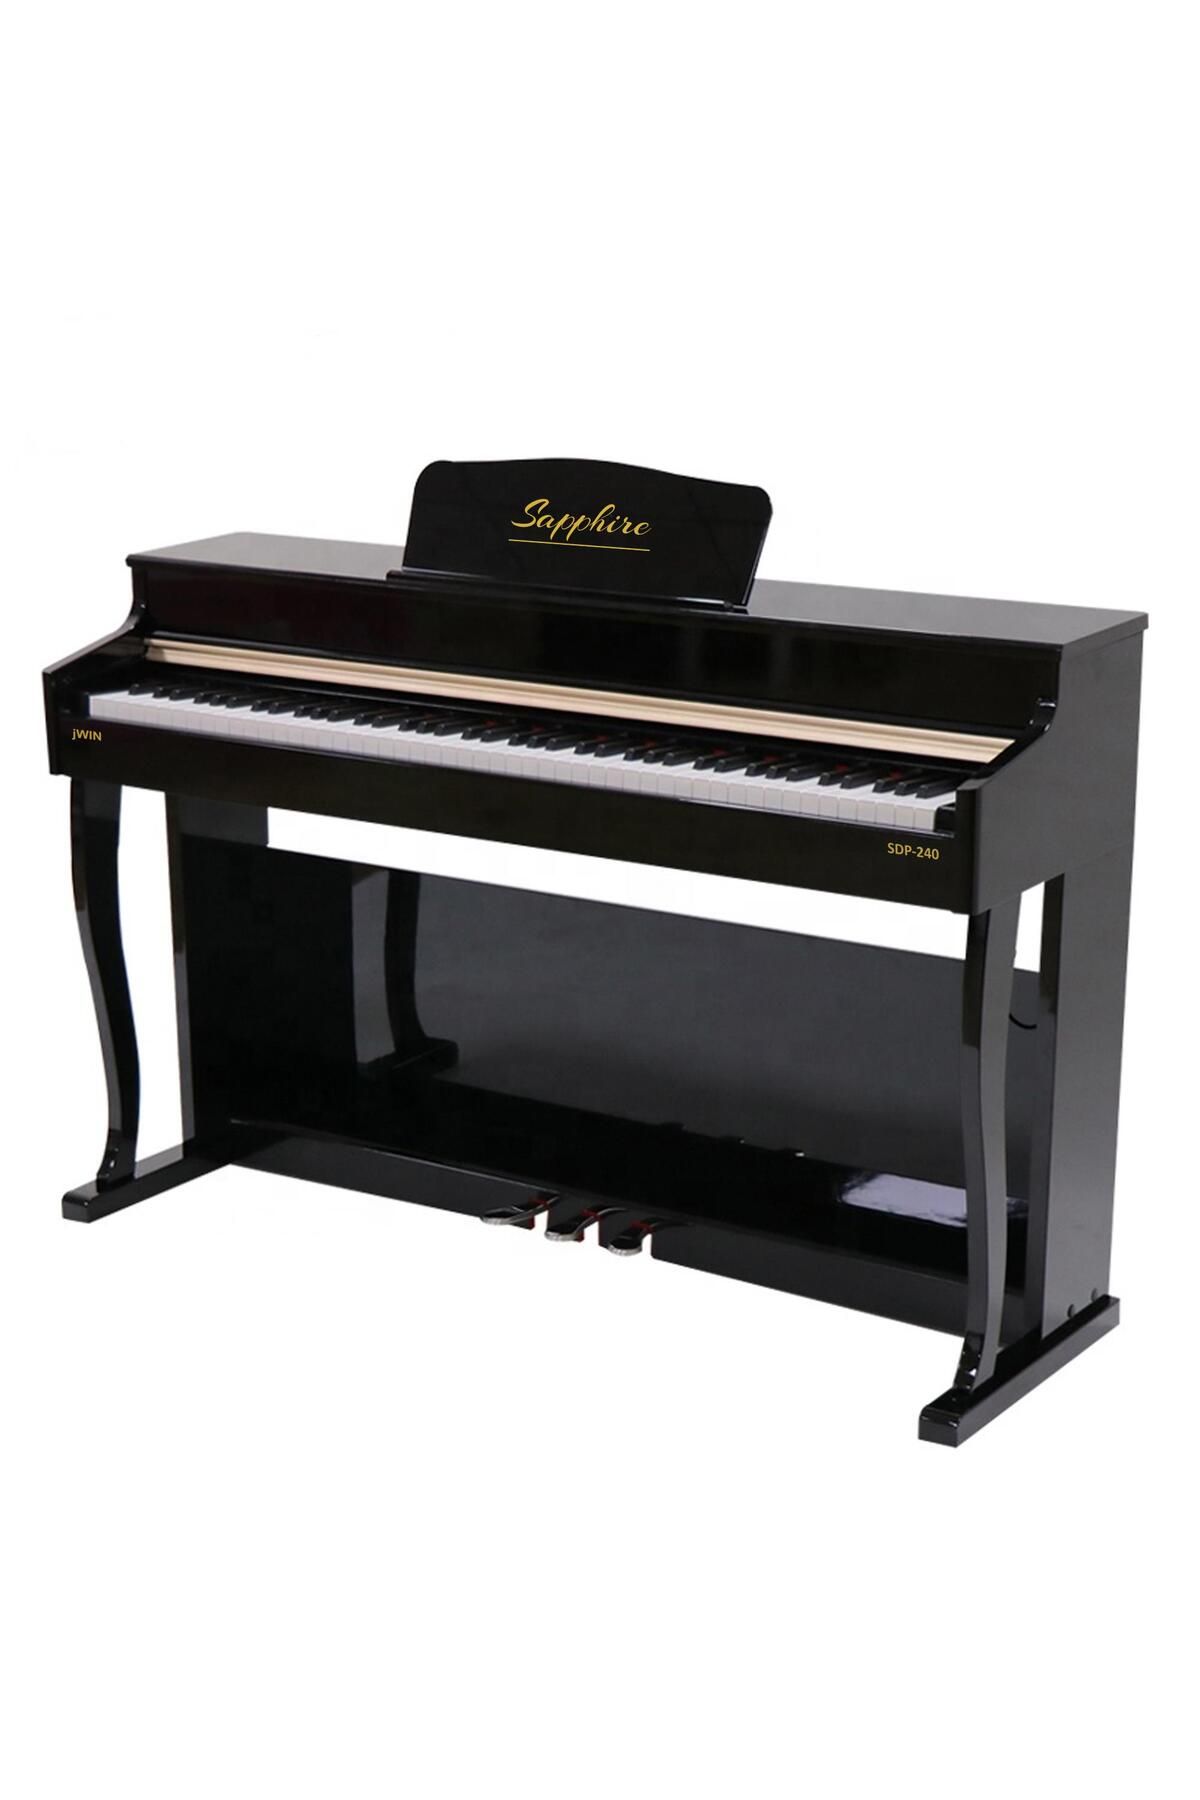 JWIN Sdp-240 Çekiç Aksiyonlu 88 Tuşlu Dijital Piyano - Siyah